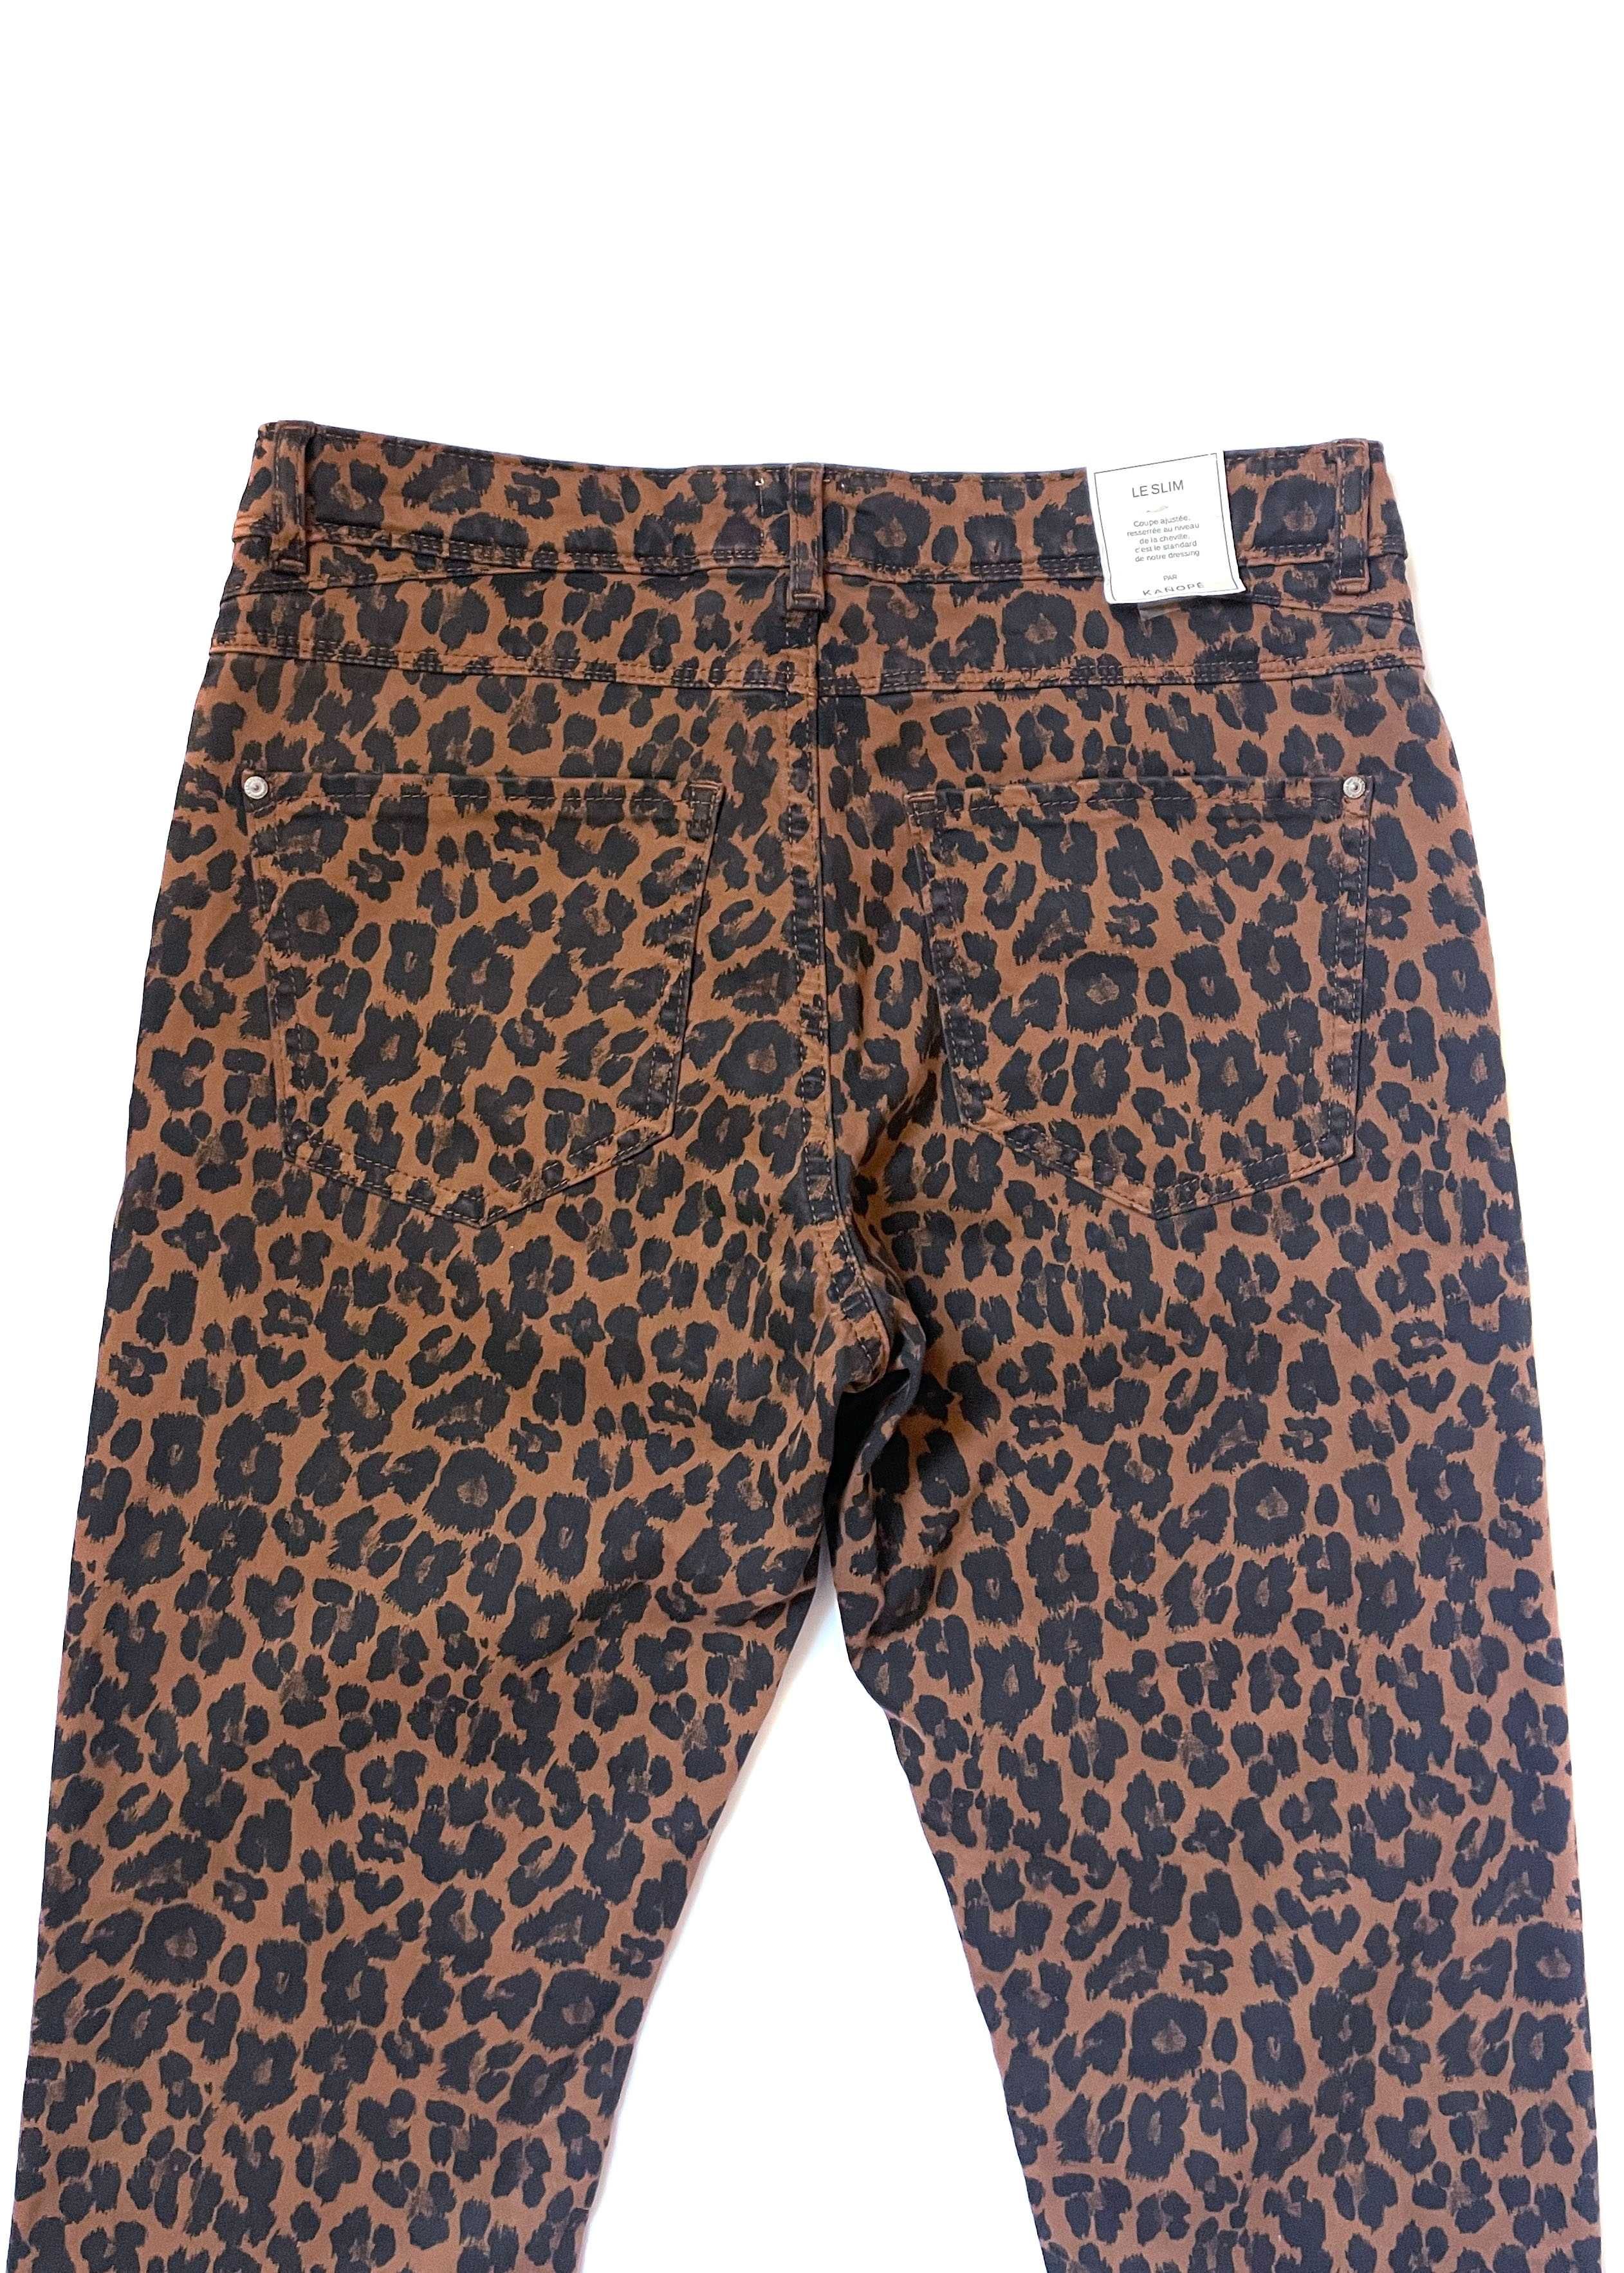 Леопардовые джинсы Kanope slim fit, S/M